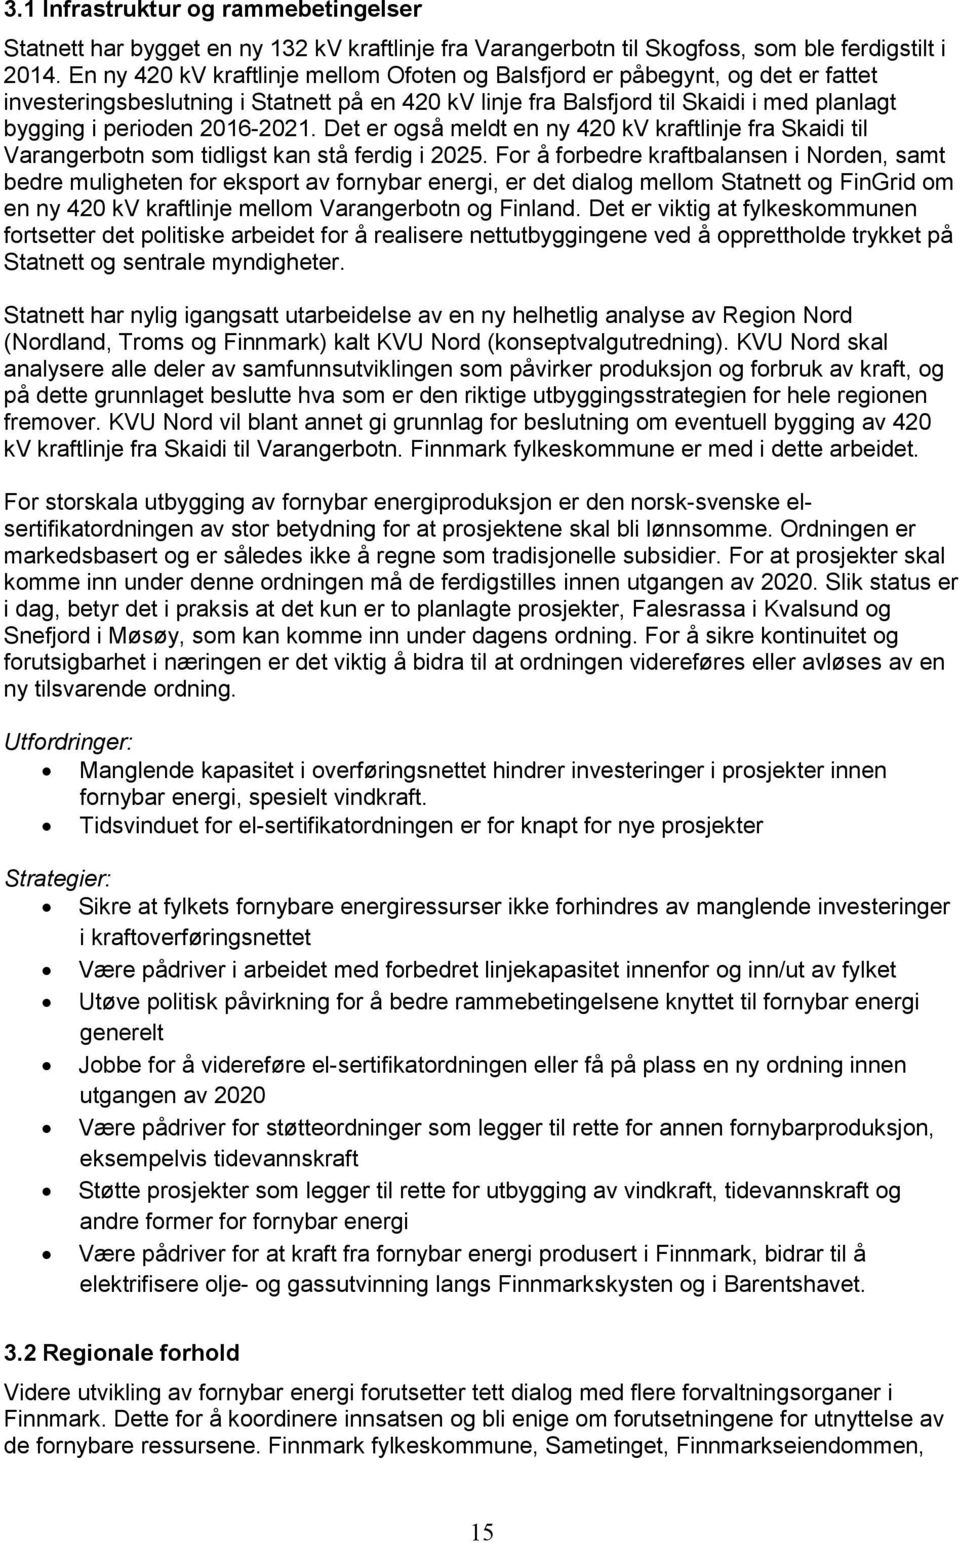 2016-2021. Det er også meldt en ny 420 kv kraftlinje fra Skaidi til Varangerbotn som tidligst kan stå ferdig i 2025.